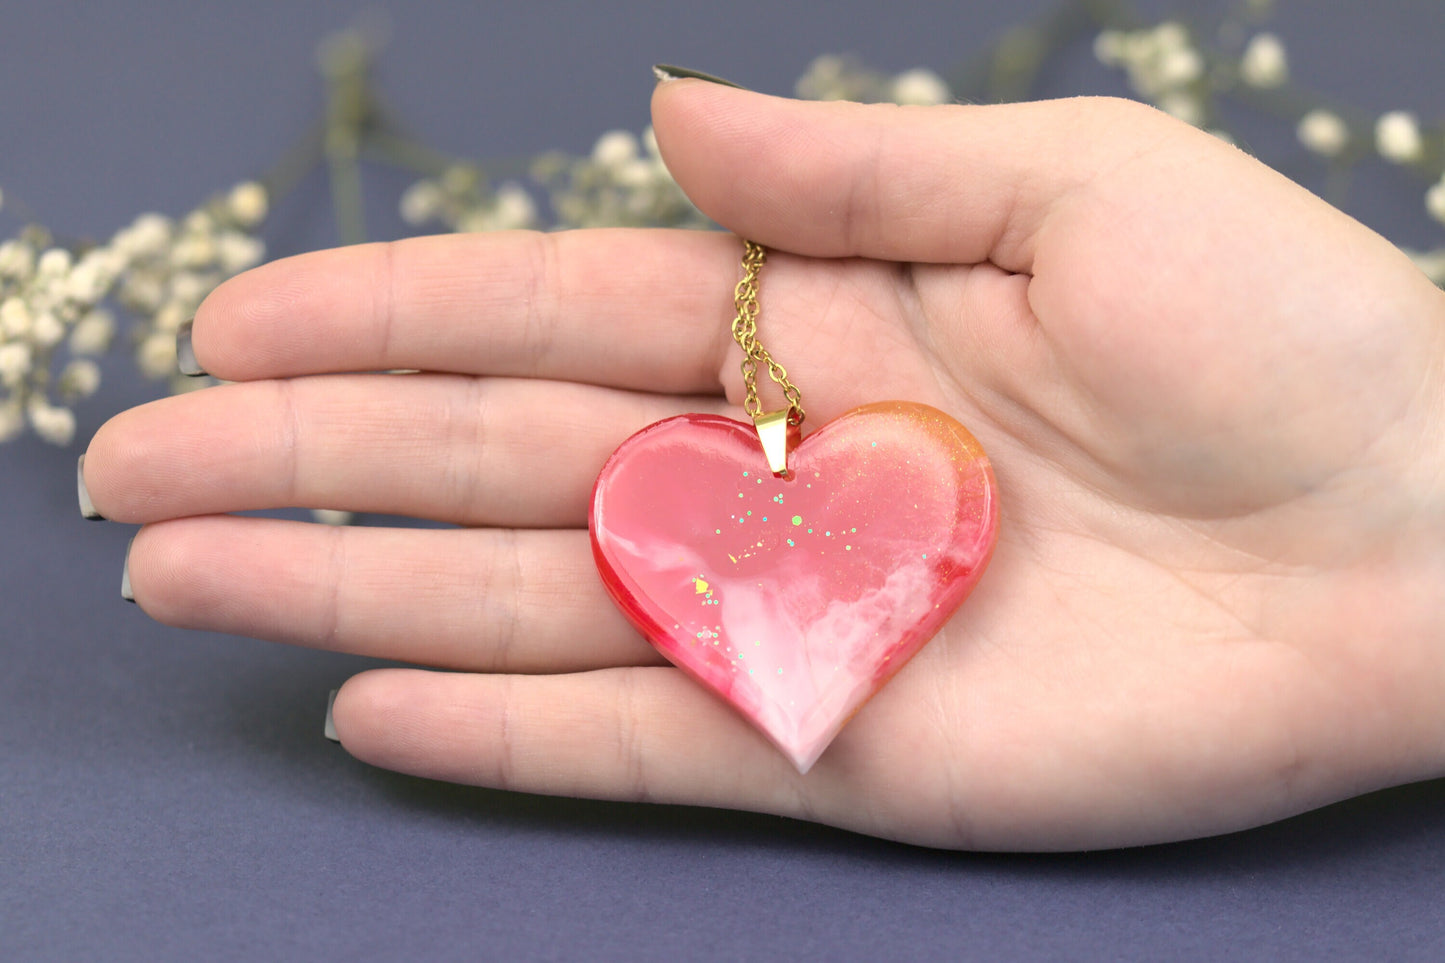 Colier Mare - Inima - Inox -  Rosu cu Auriu - Handmade  (Colecția Universe of Celestia)